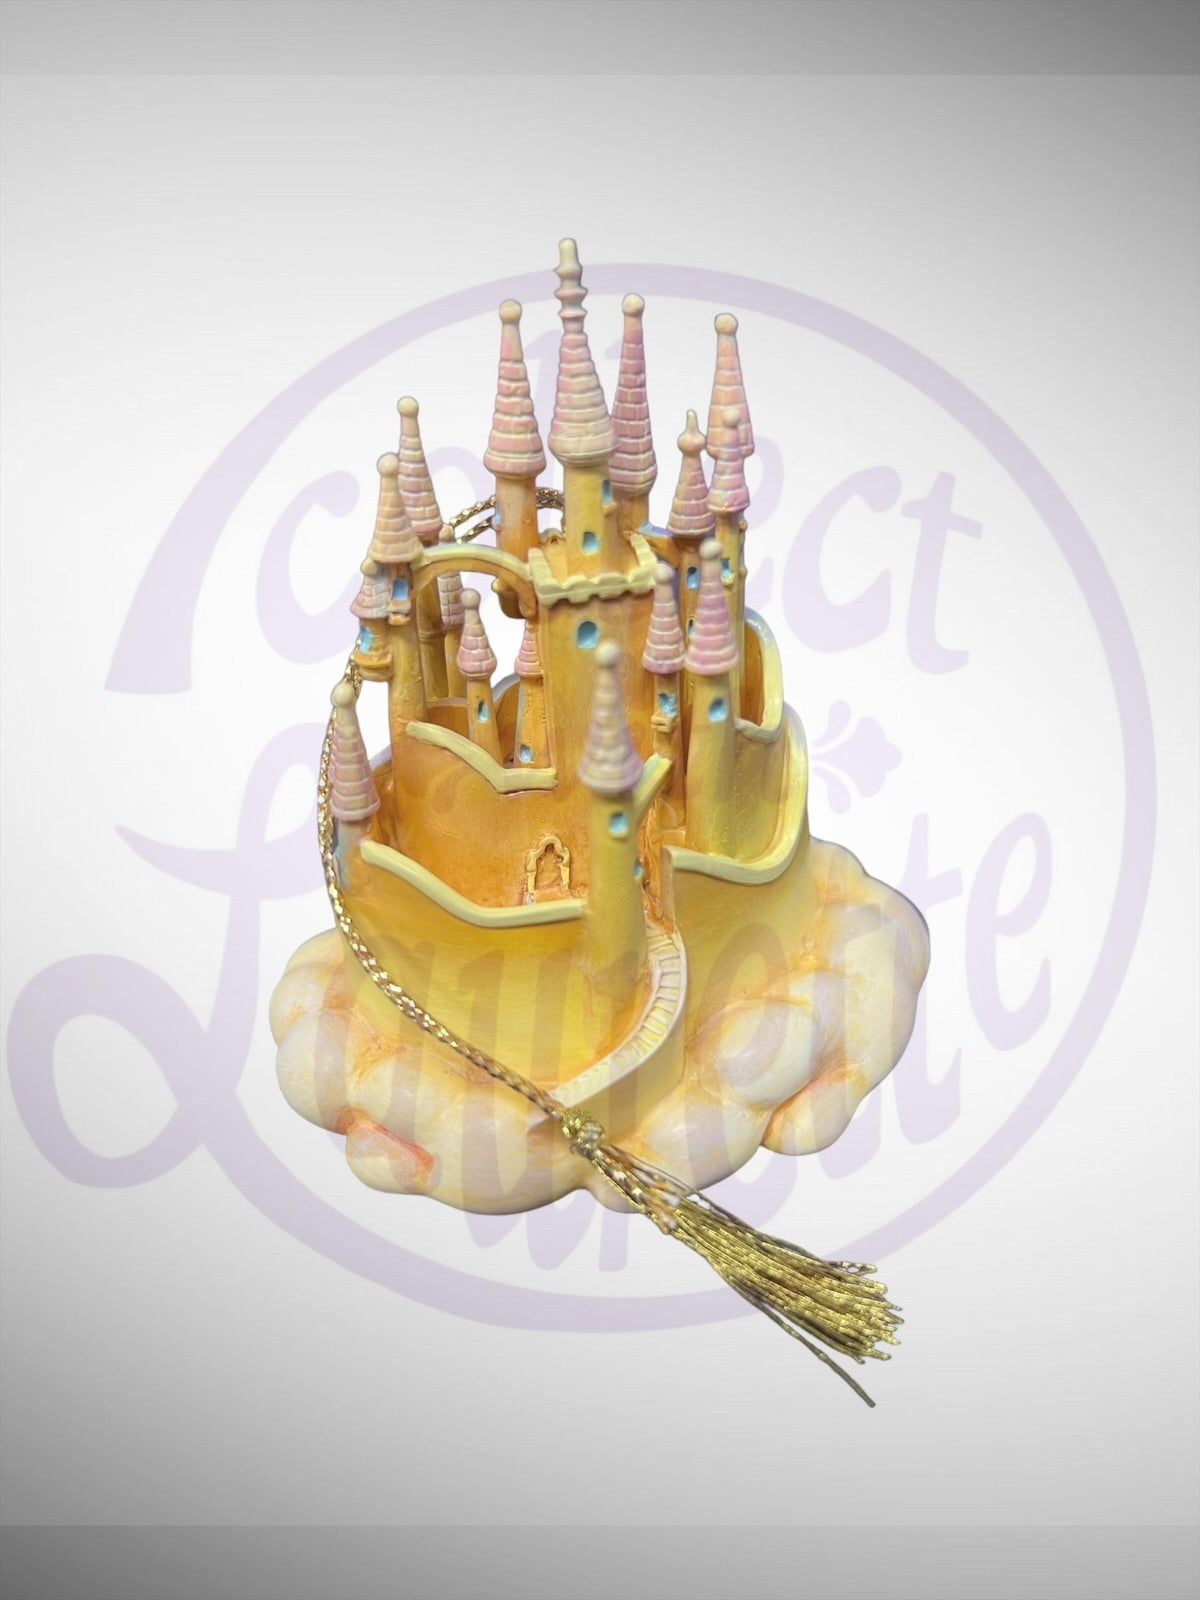 Walt Disney Classics Collection Enchanted Places - WDCC Snow White's Castle Ornament Figurine